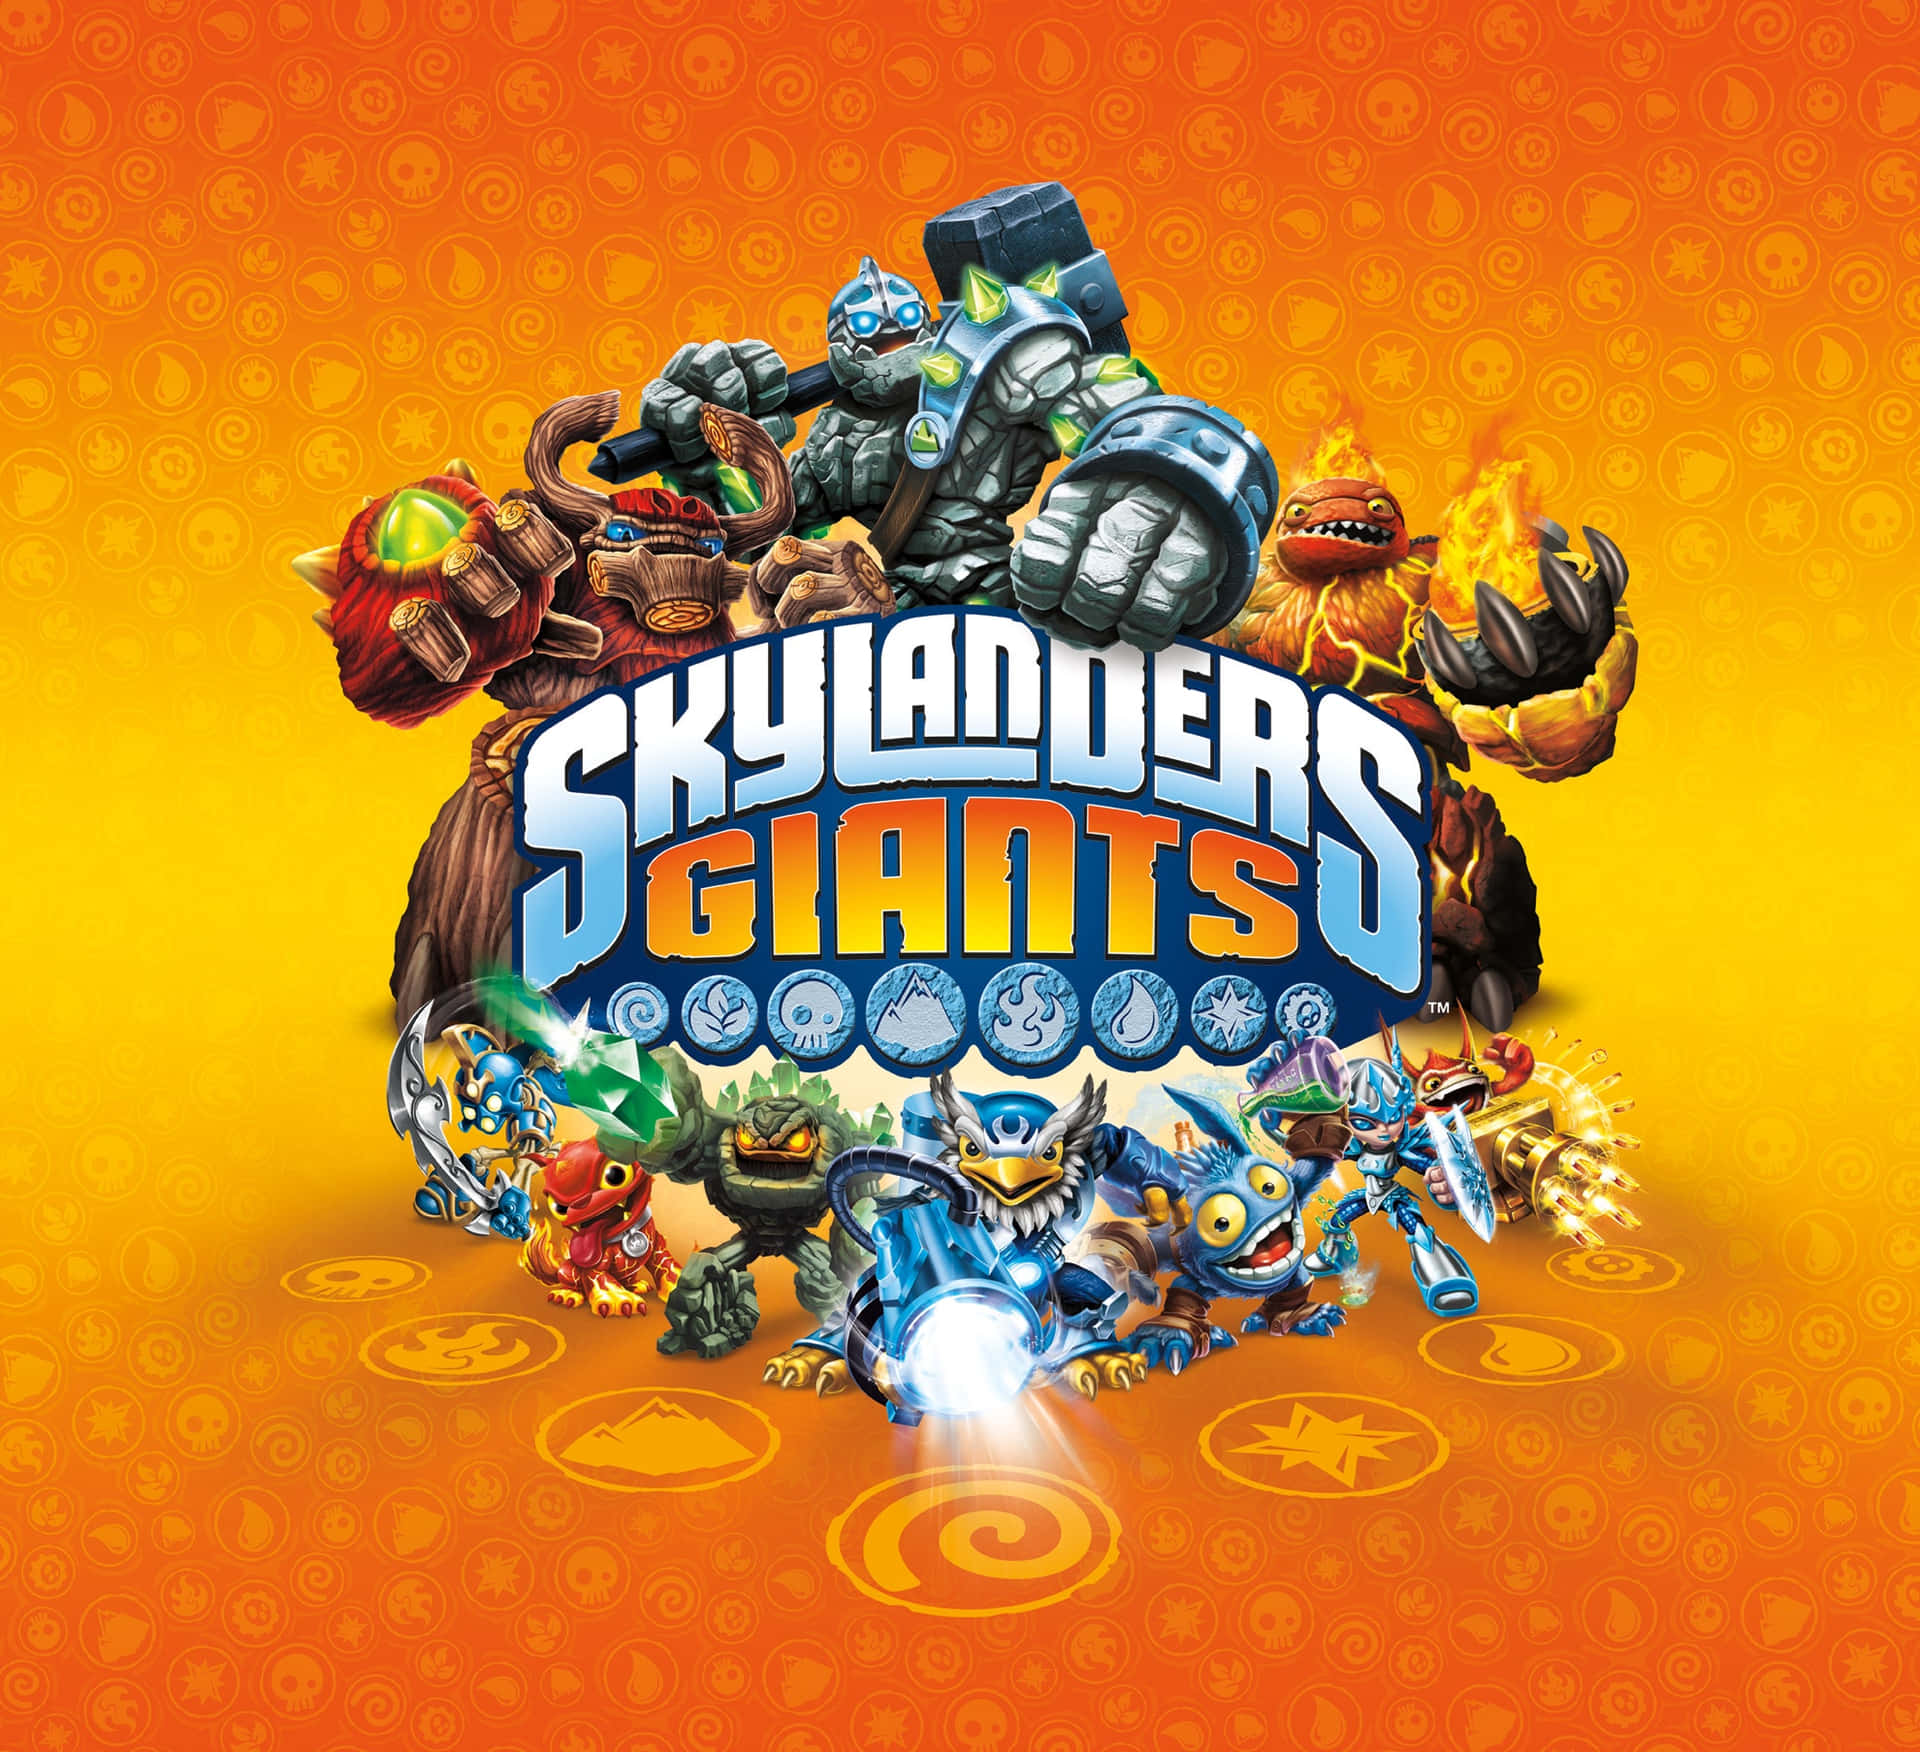 Skylanders Giants - Pc - Pc - Pc - Pc - Pc - Wallpaper